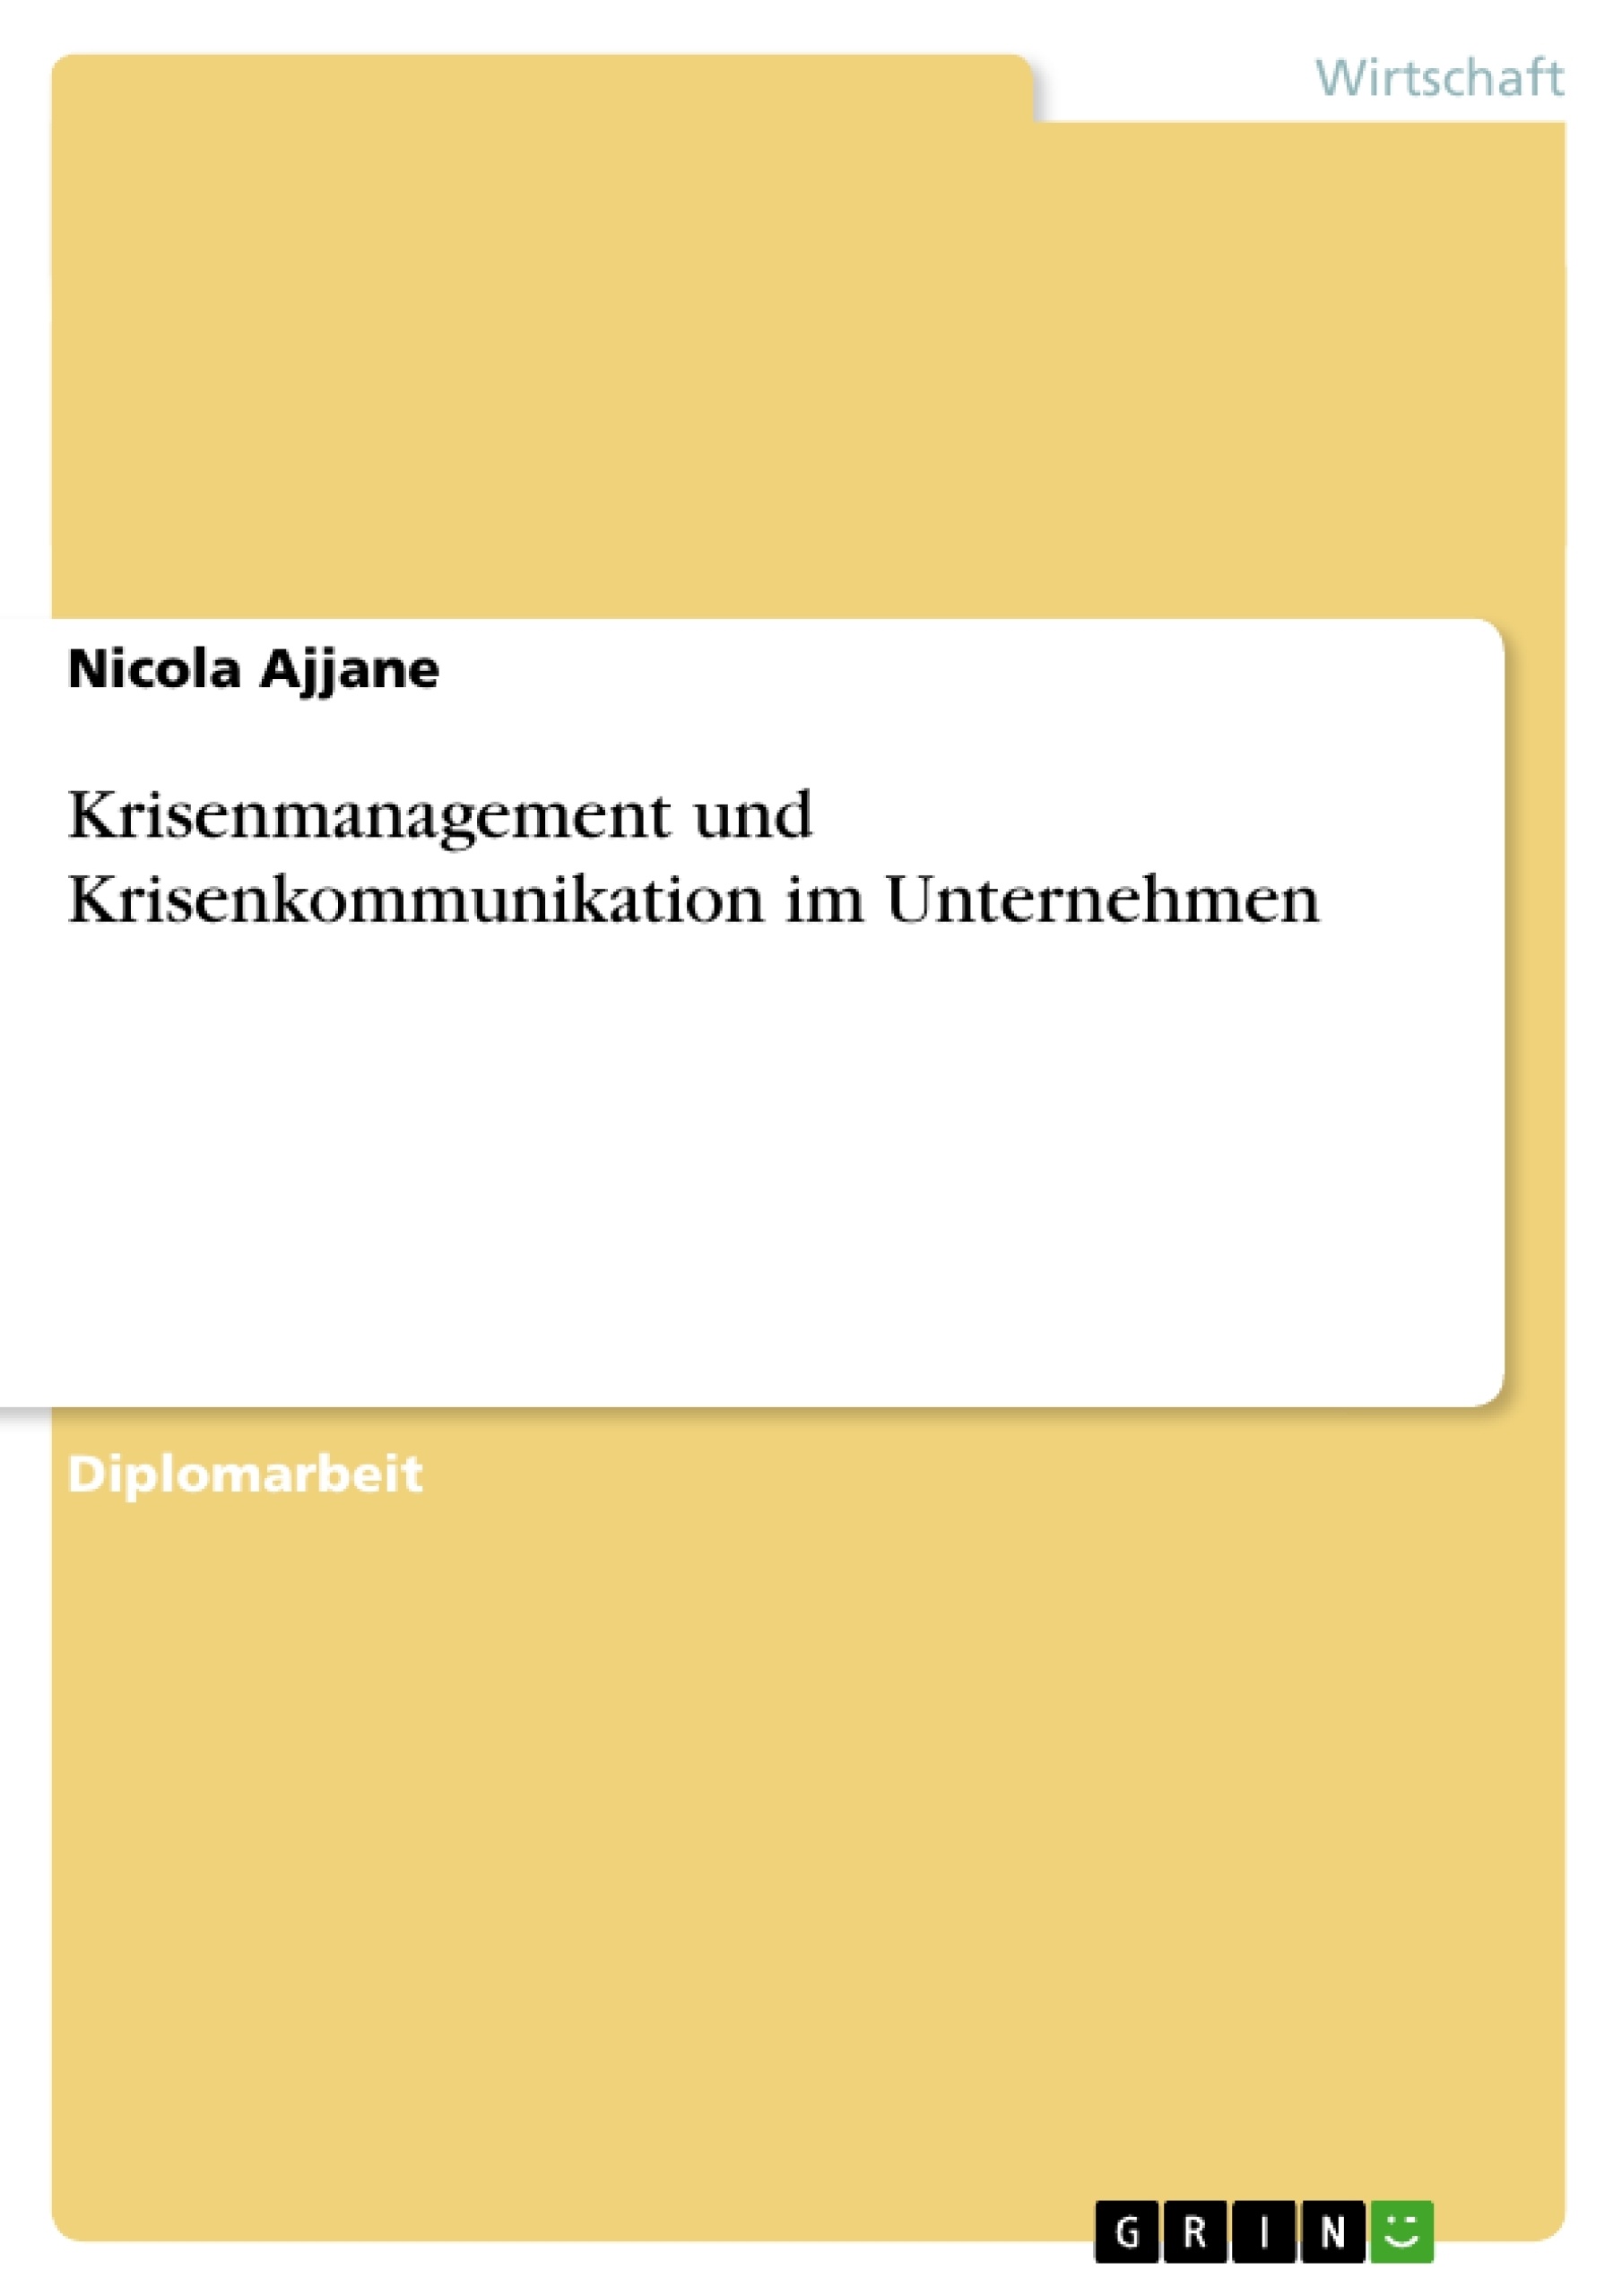 Title: Krisenmanagement und Krisenkommunikation im Unternehmen